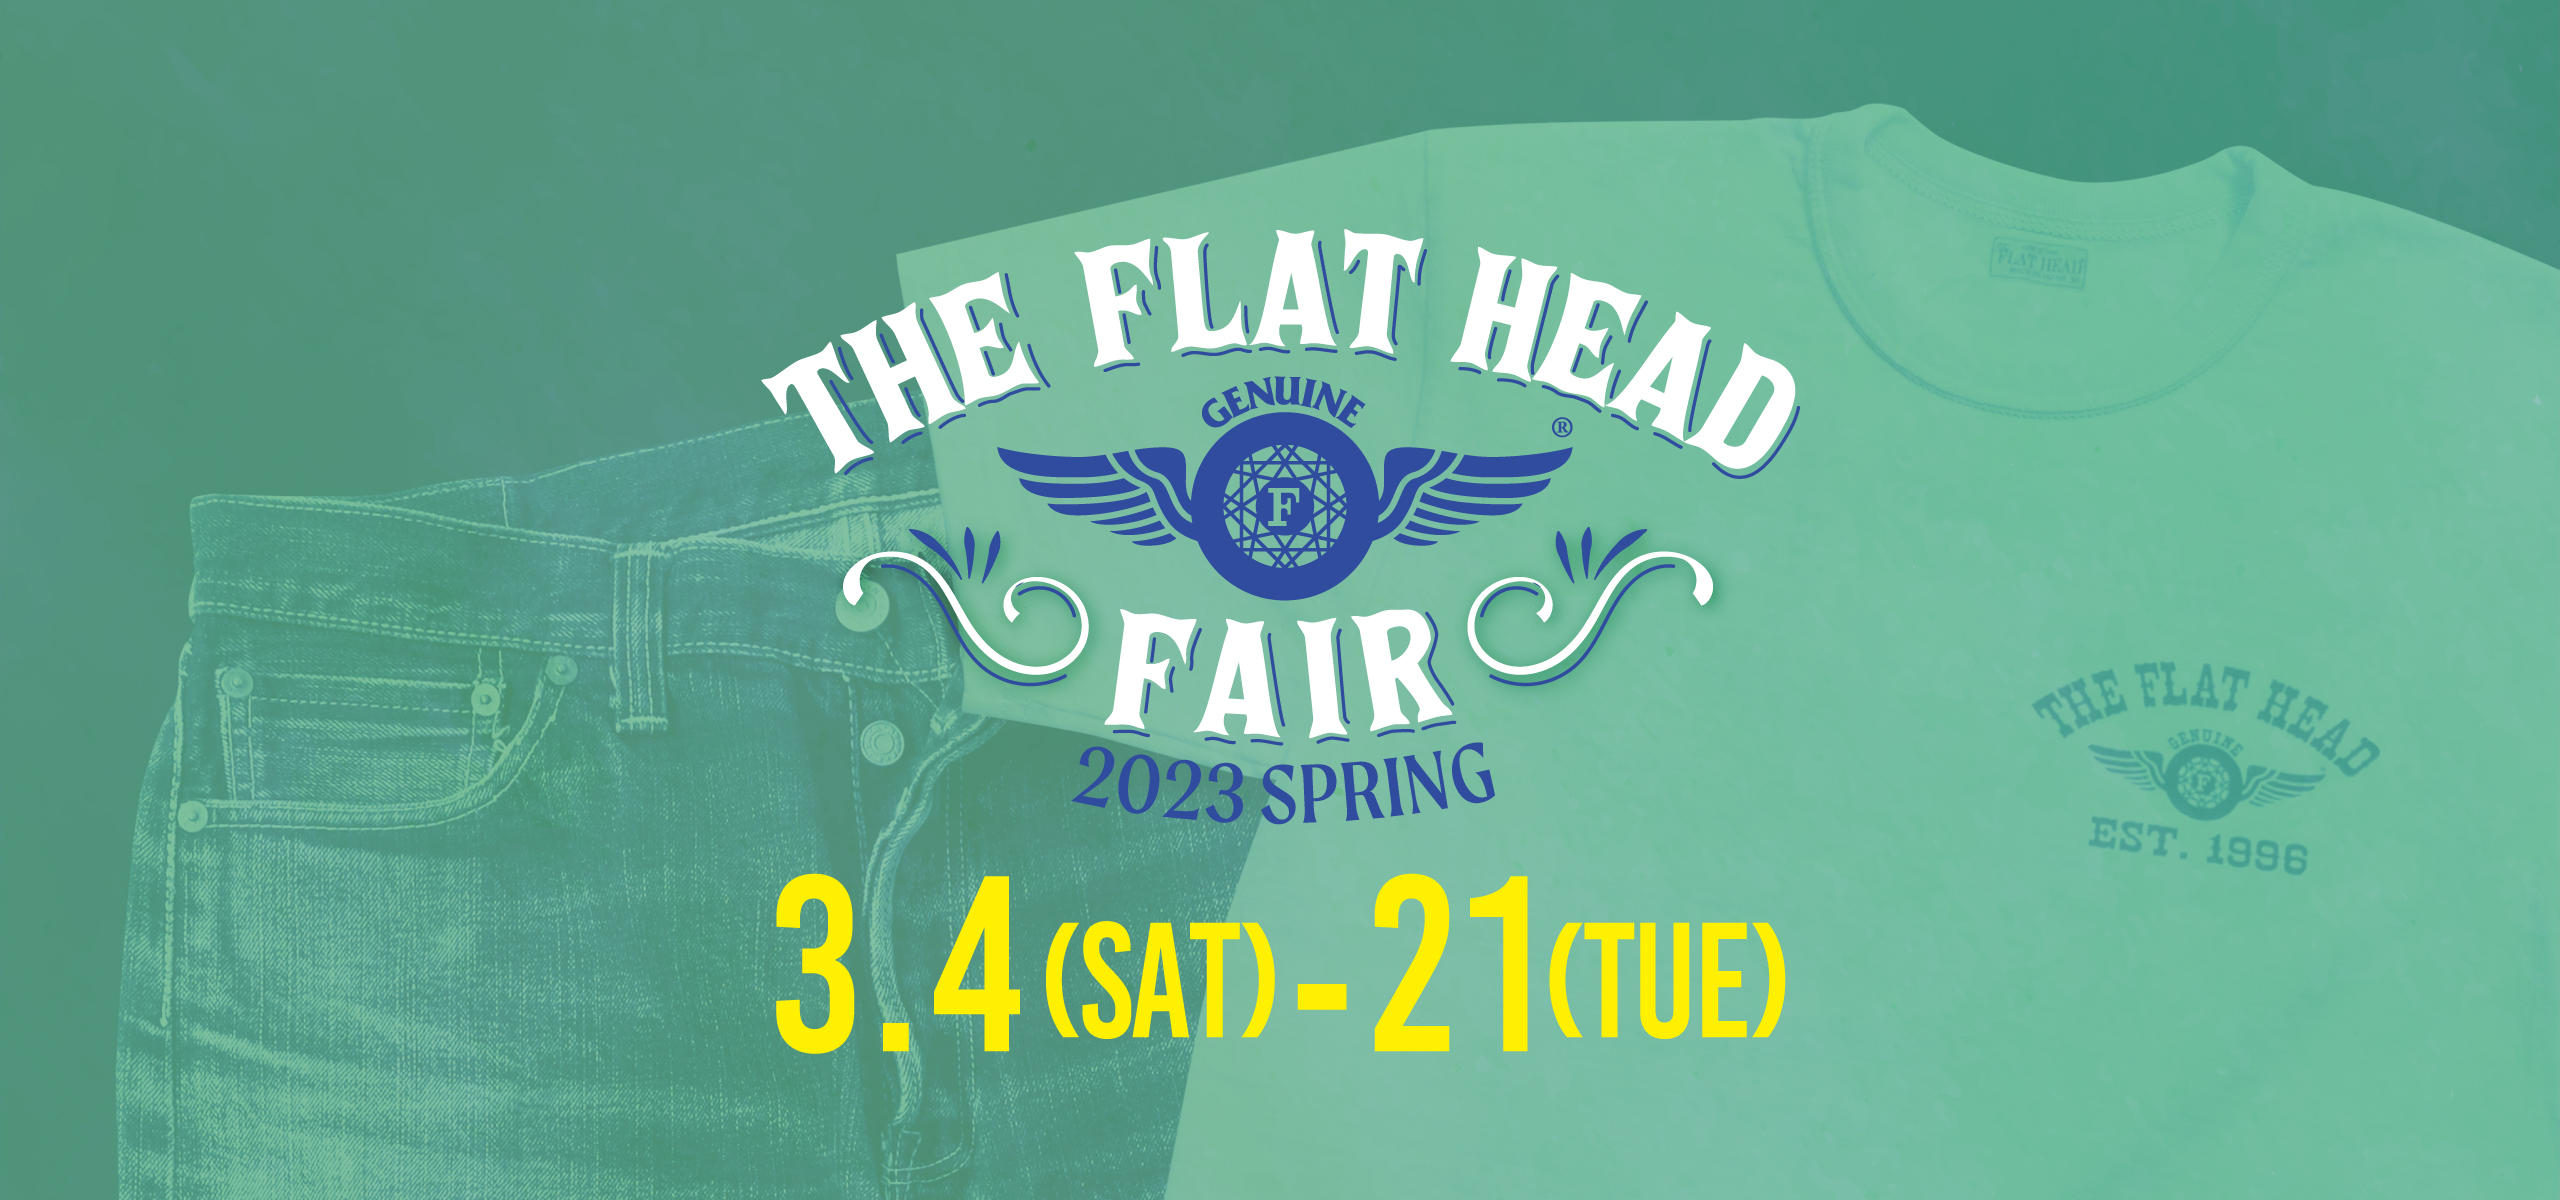 THE FLAT HEAD FAIR2023 SPRING